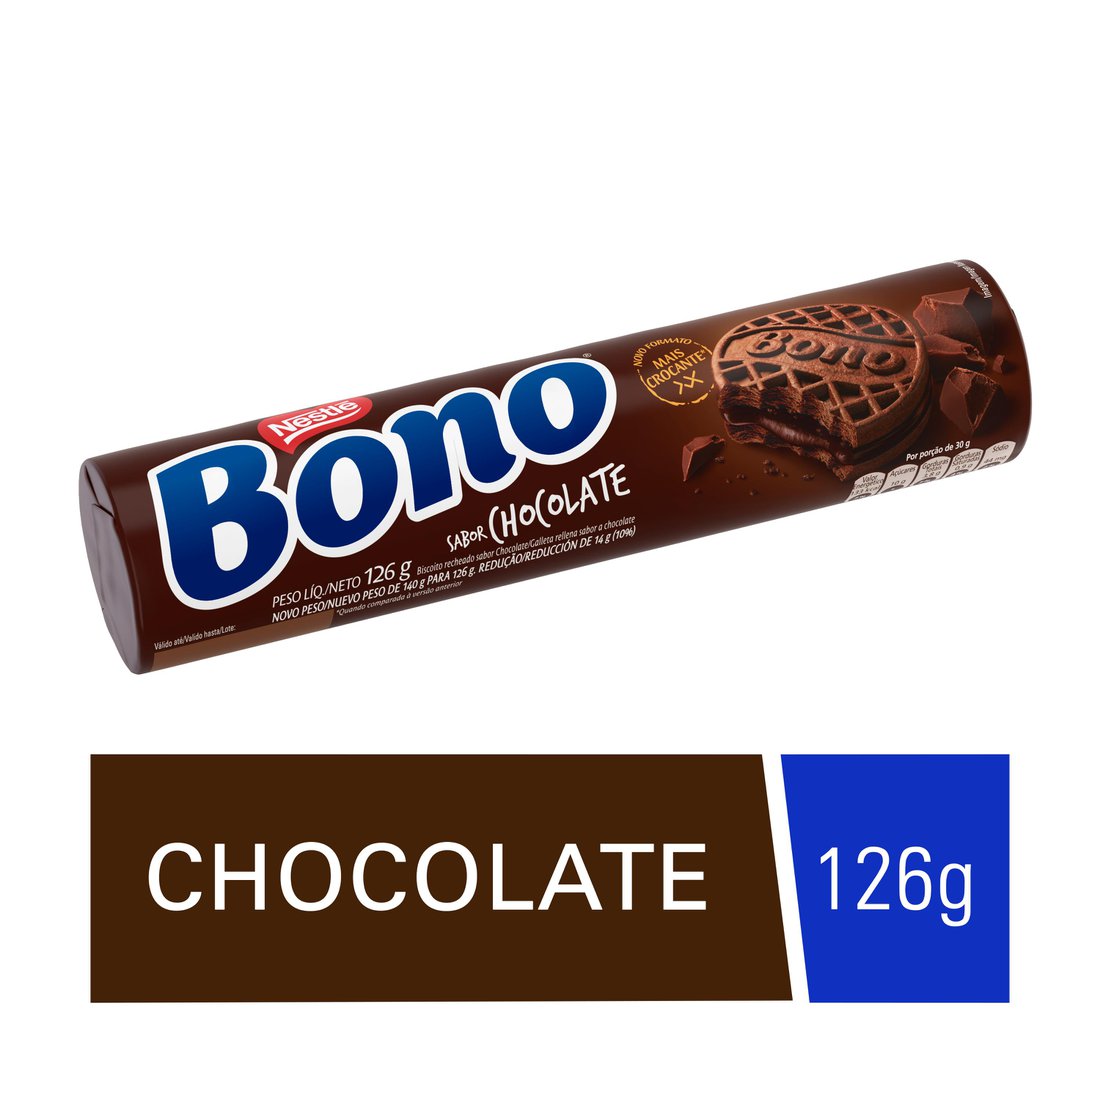 Biscoito BONO Recheado Chocolate 126g